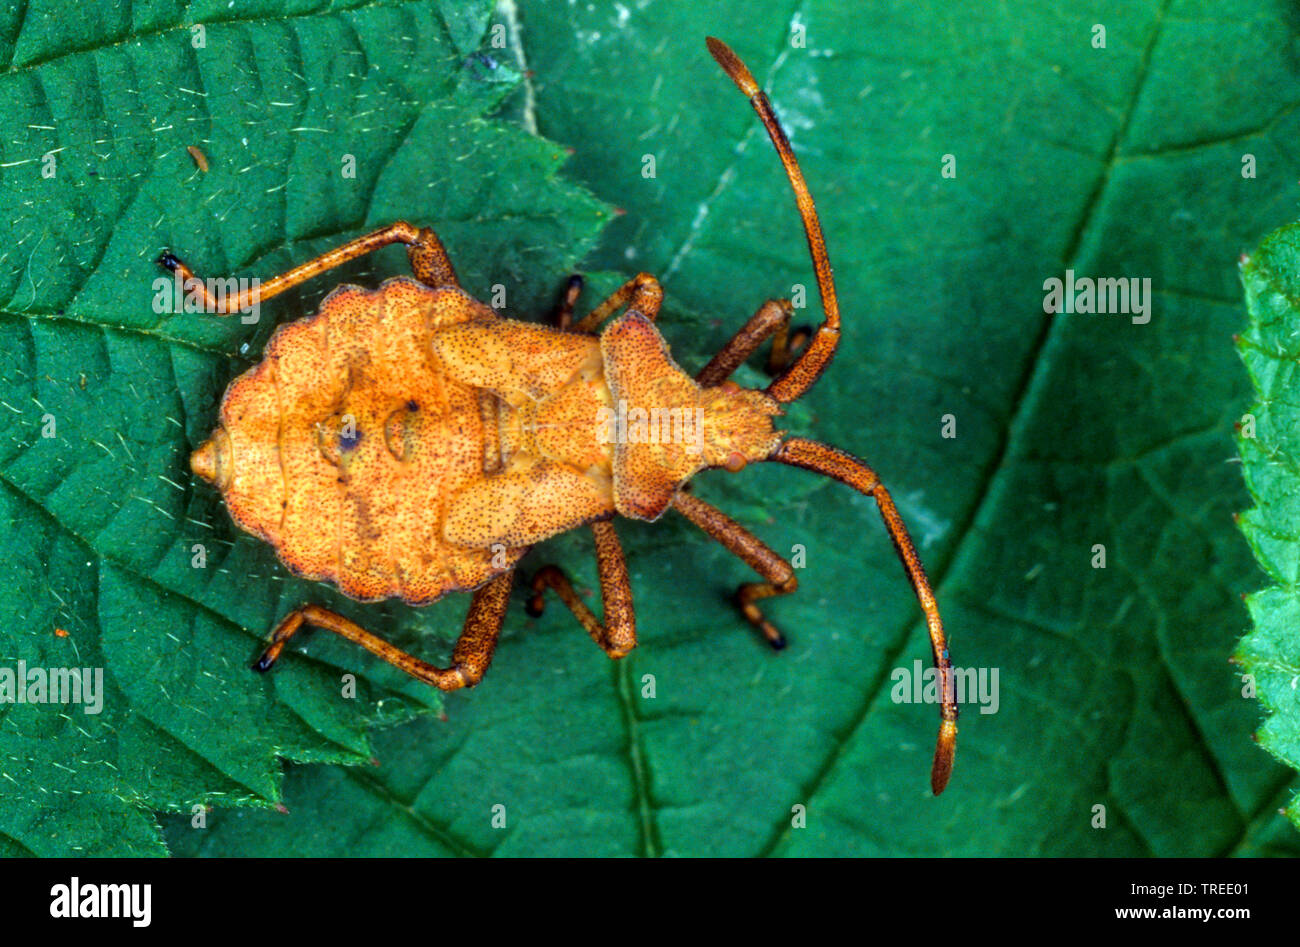 Squash bug (Coreus marginatus, Mesocerus marginatus), ninfa, Alemania Foto de stock